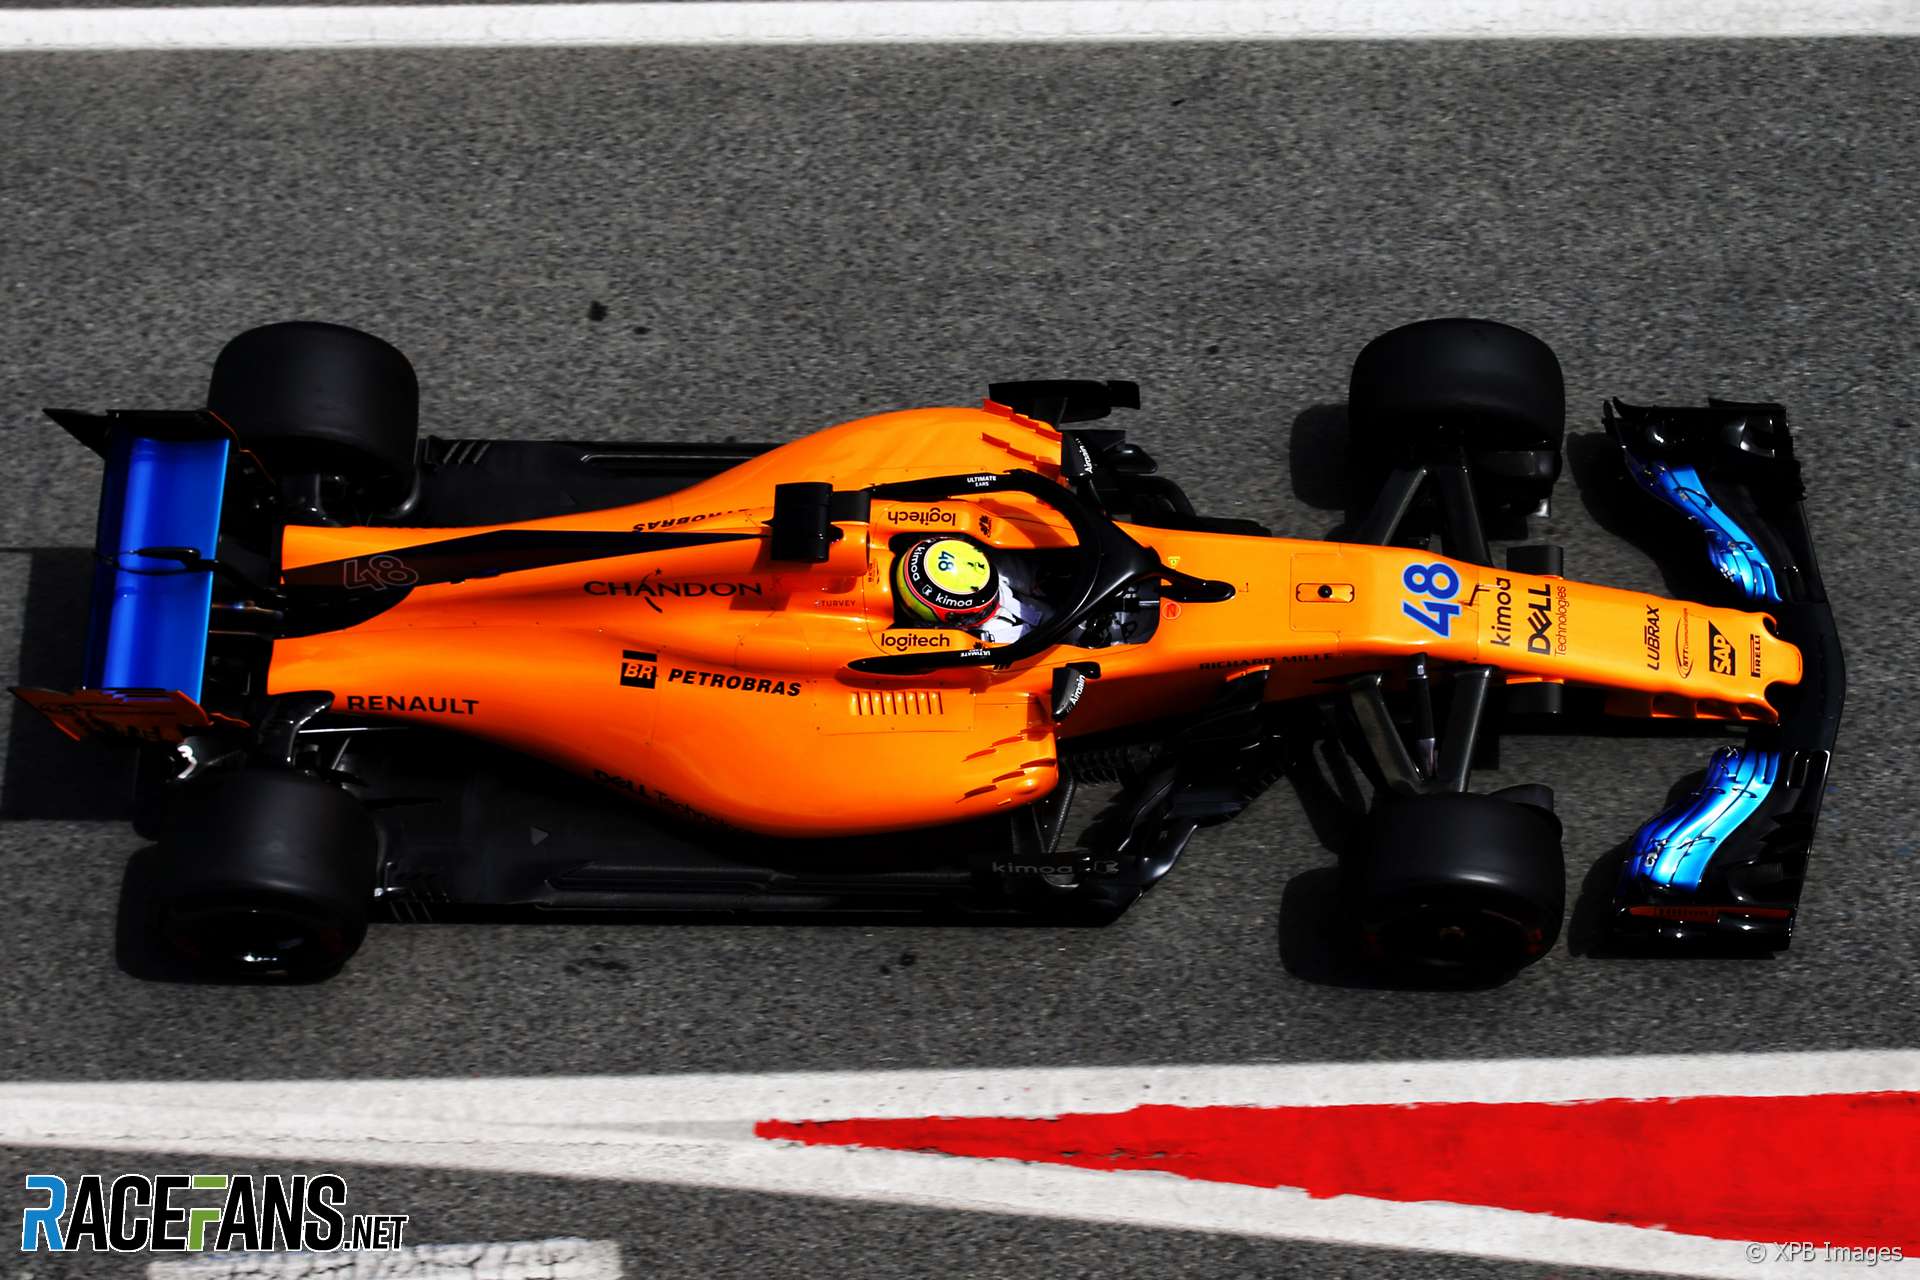 Lando Norris, McLaren, Circuit de Catalunya